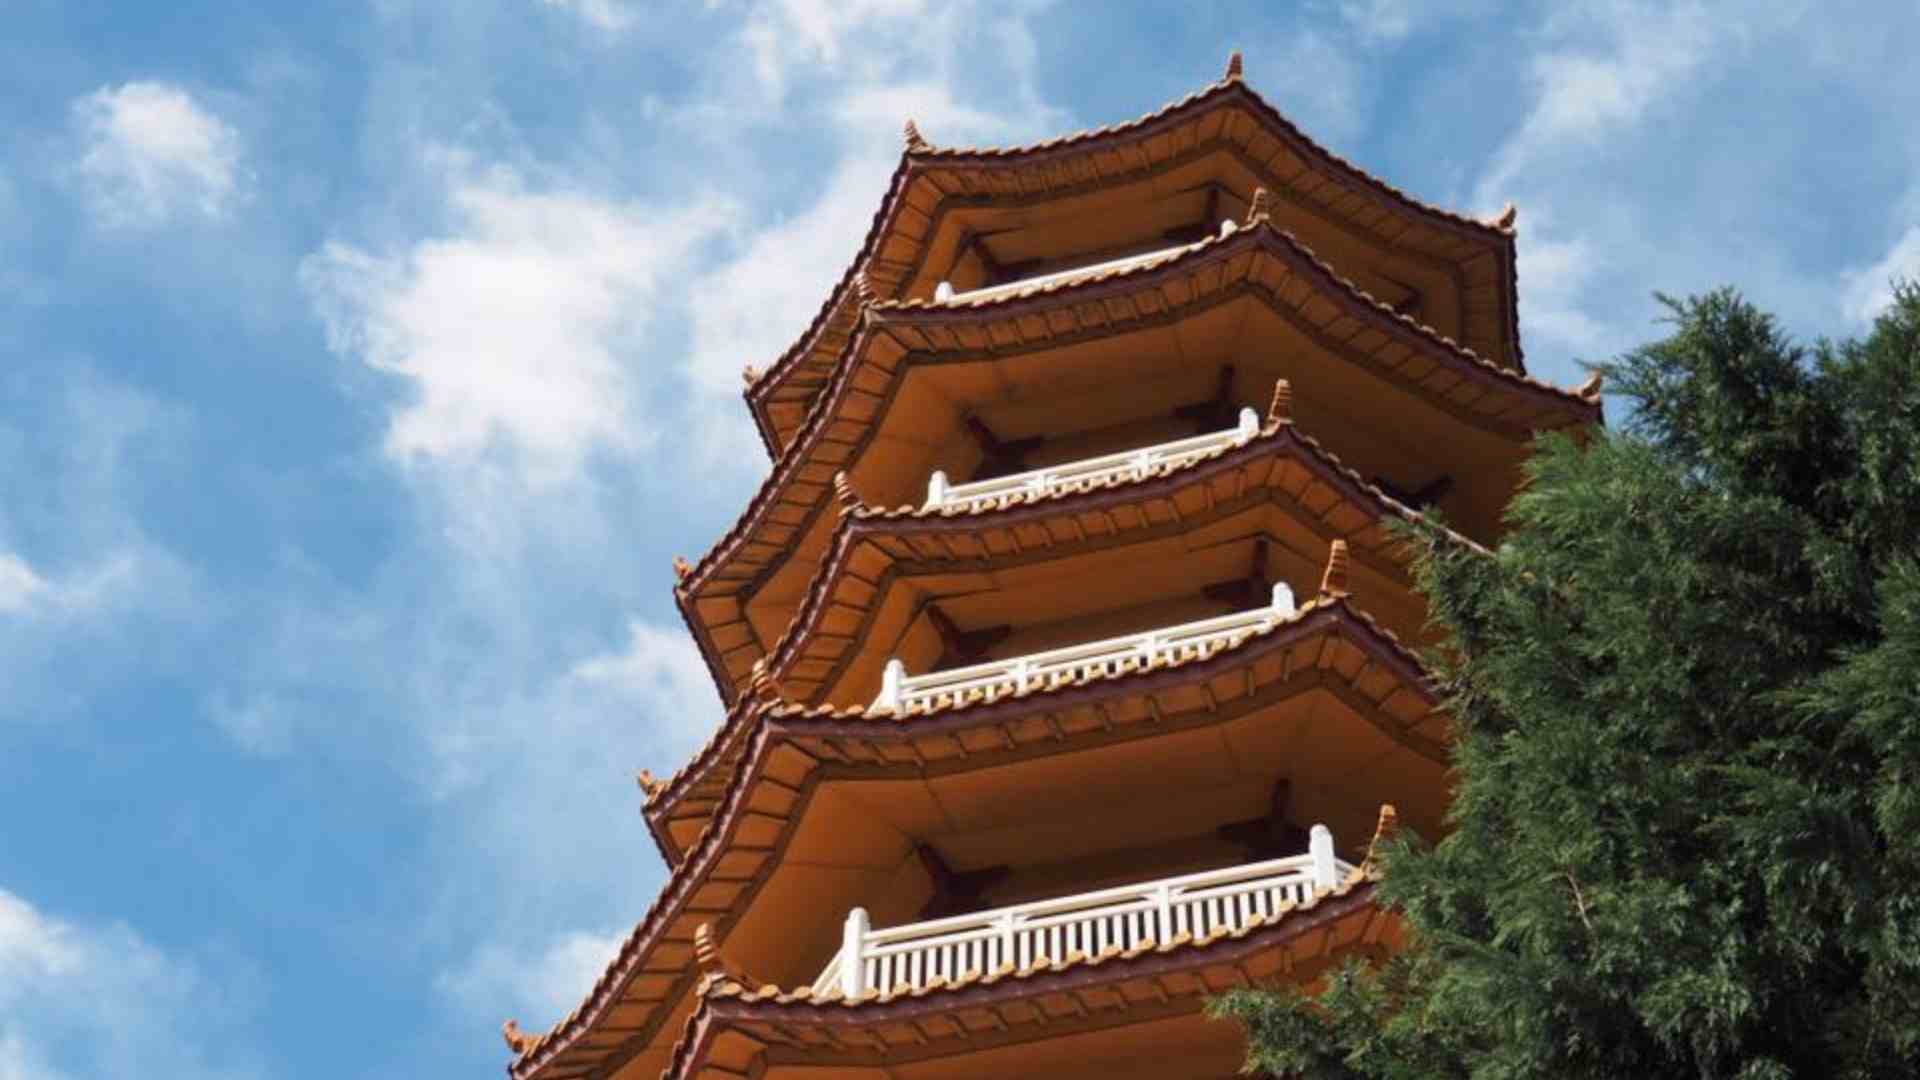 Nan Tien Temple Pagoda in Wollongong